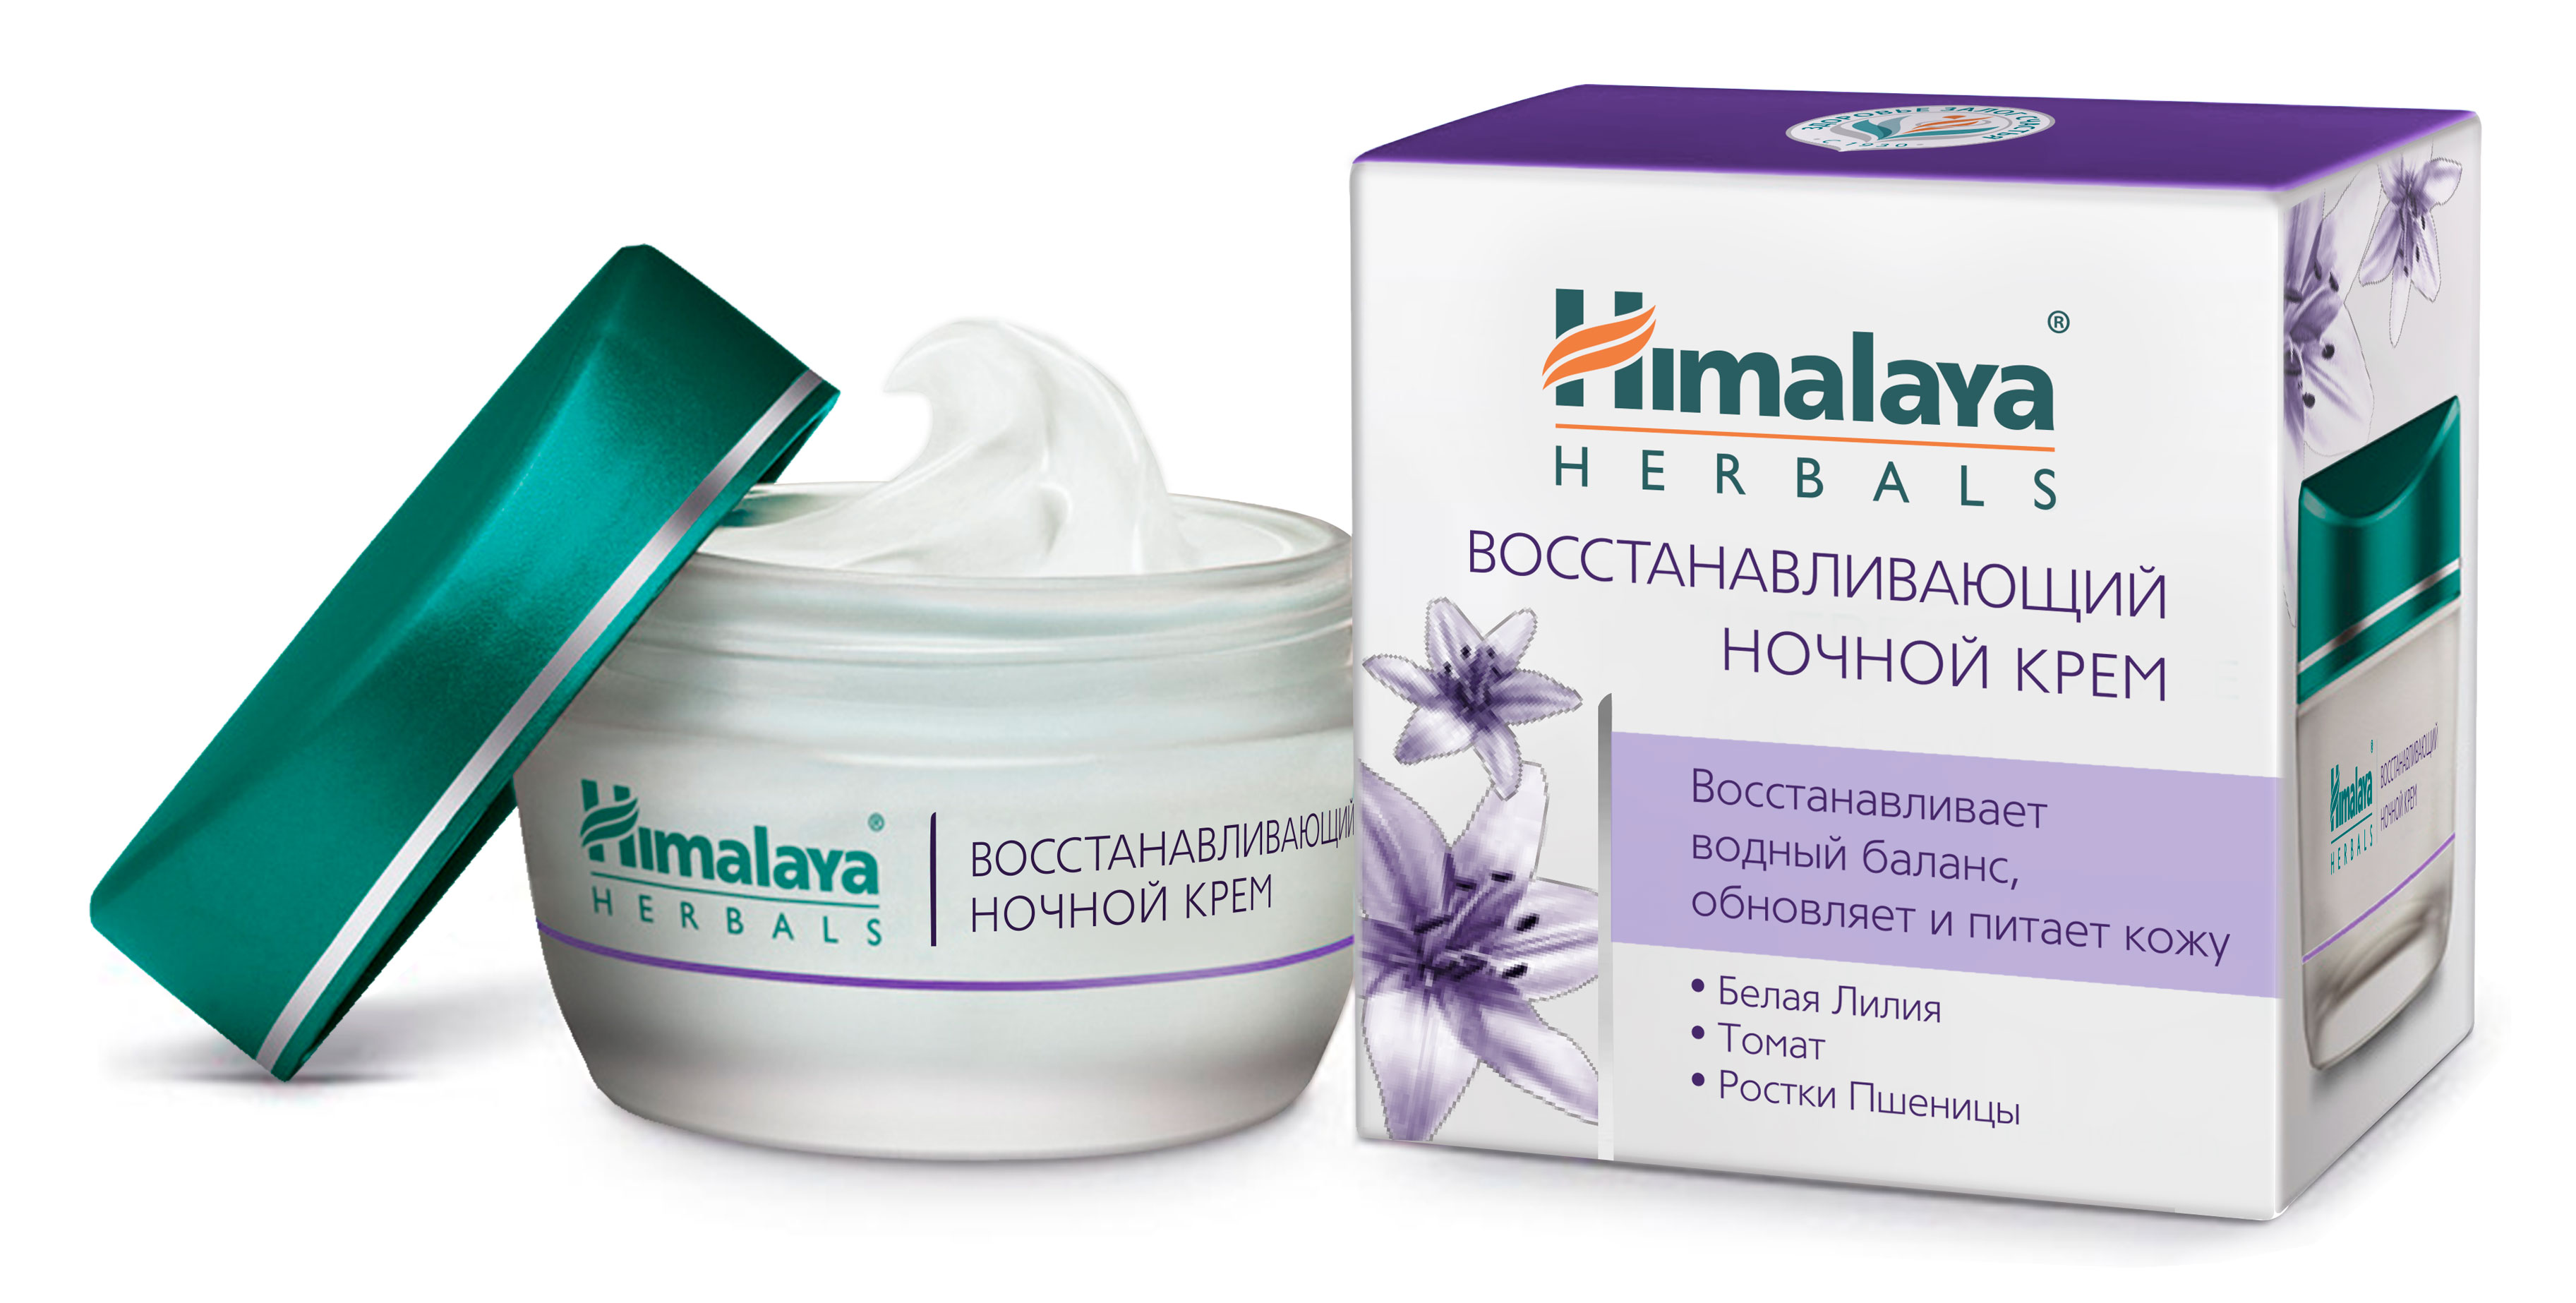 купить Himalaya Herbals Восстанавливающий ночной крем 50 г - заказ и доставка в Москве и Санкт-Петербурге